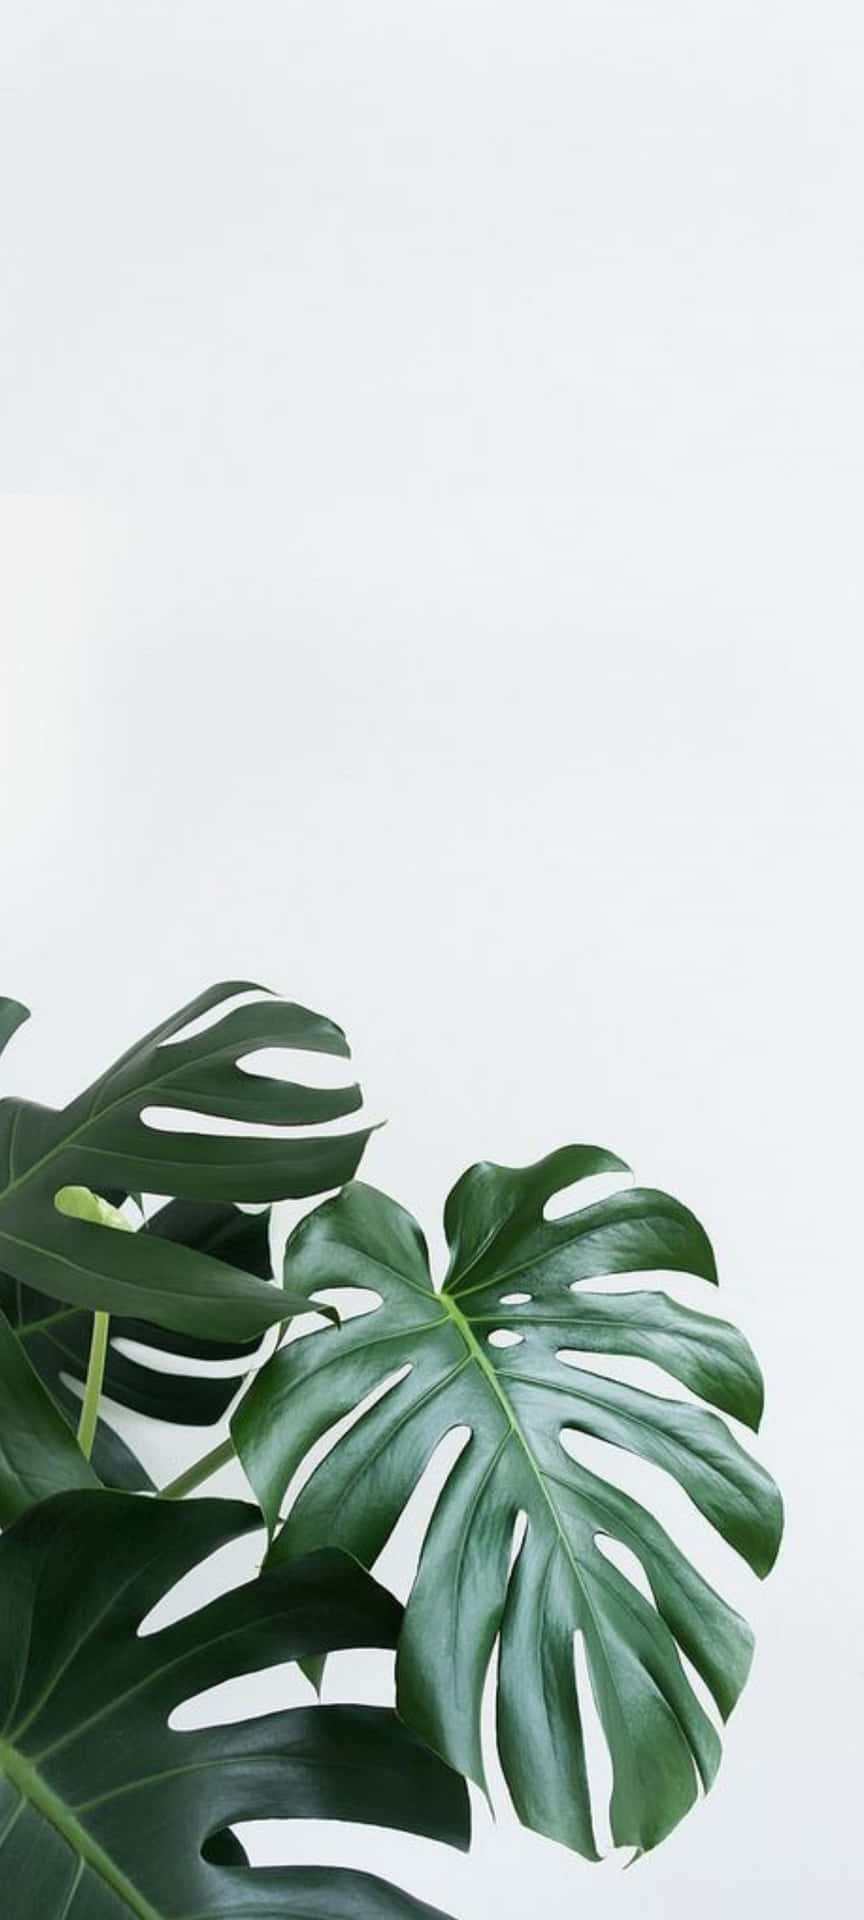 Verbessernsie Ihre Geräte Mit Einem Einzigartigen Pflanzen-telefon Wallpaper